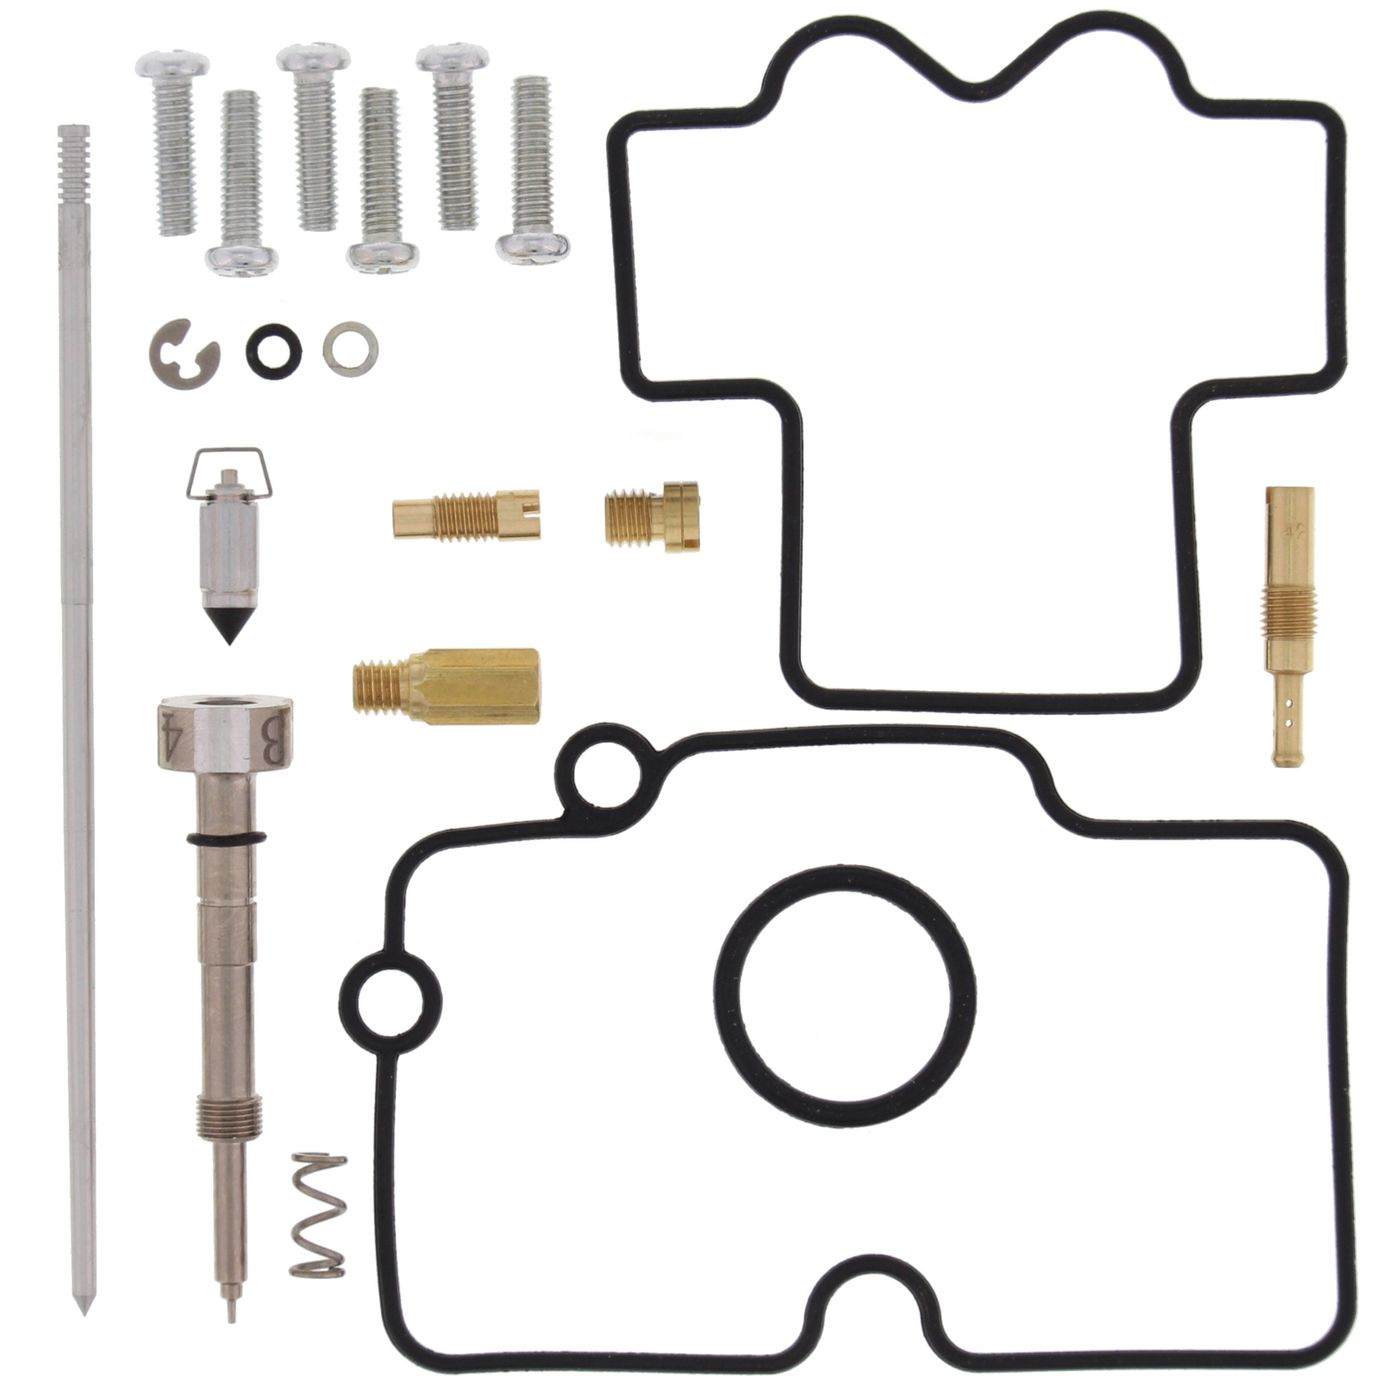 Wrp Carb Repair Kits - WRP261451 image